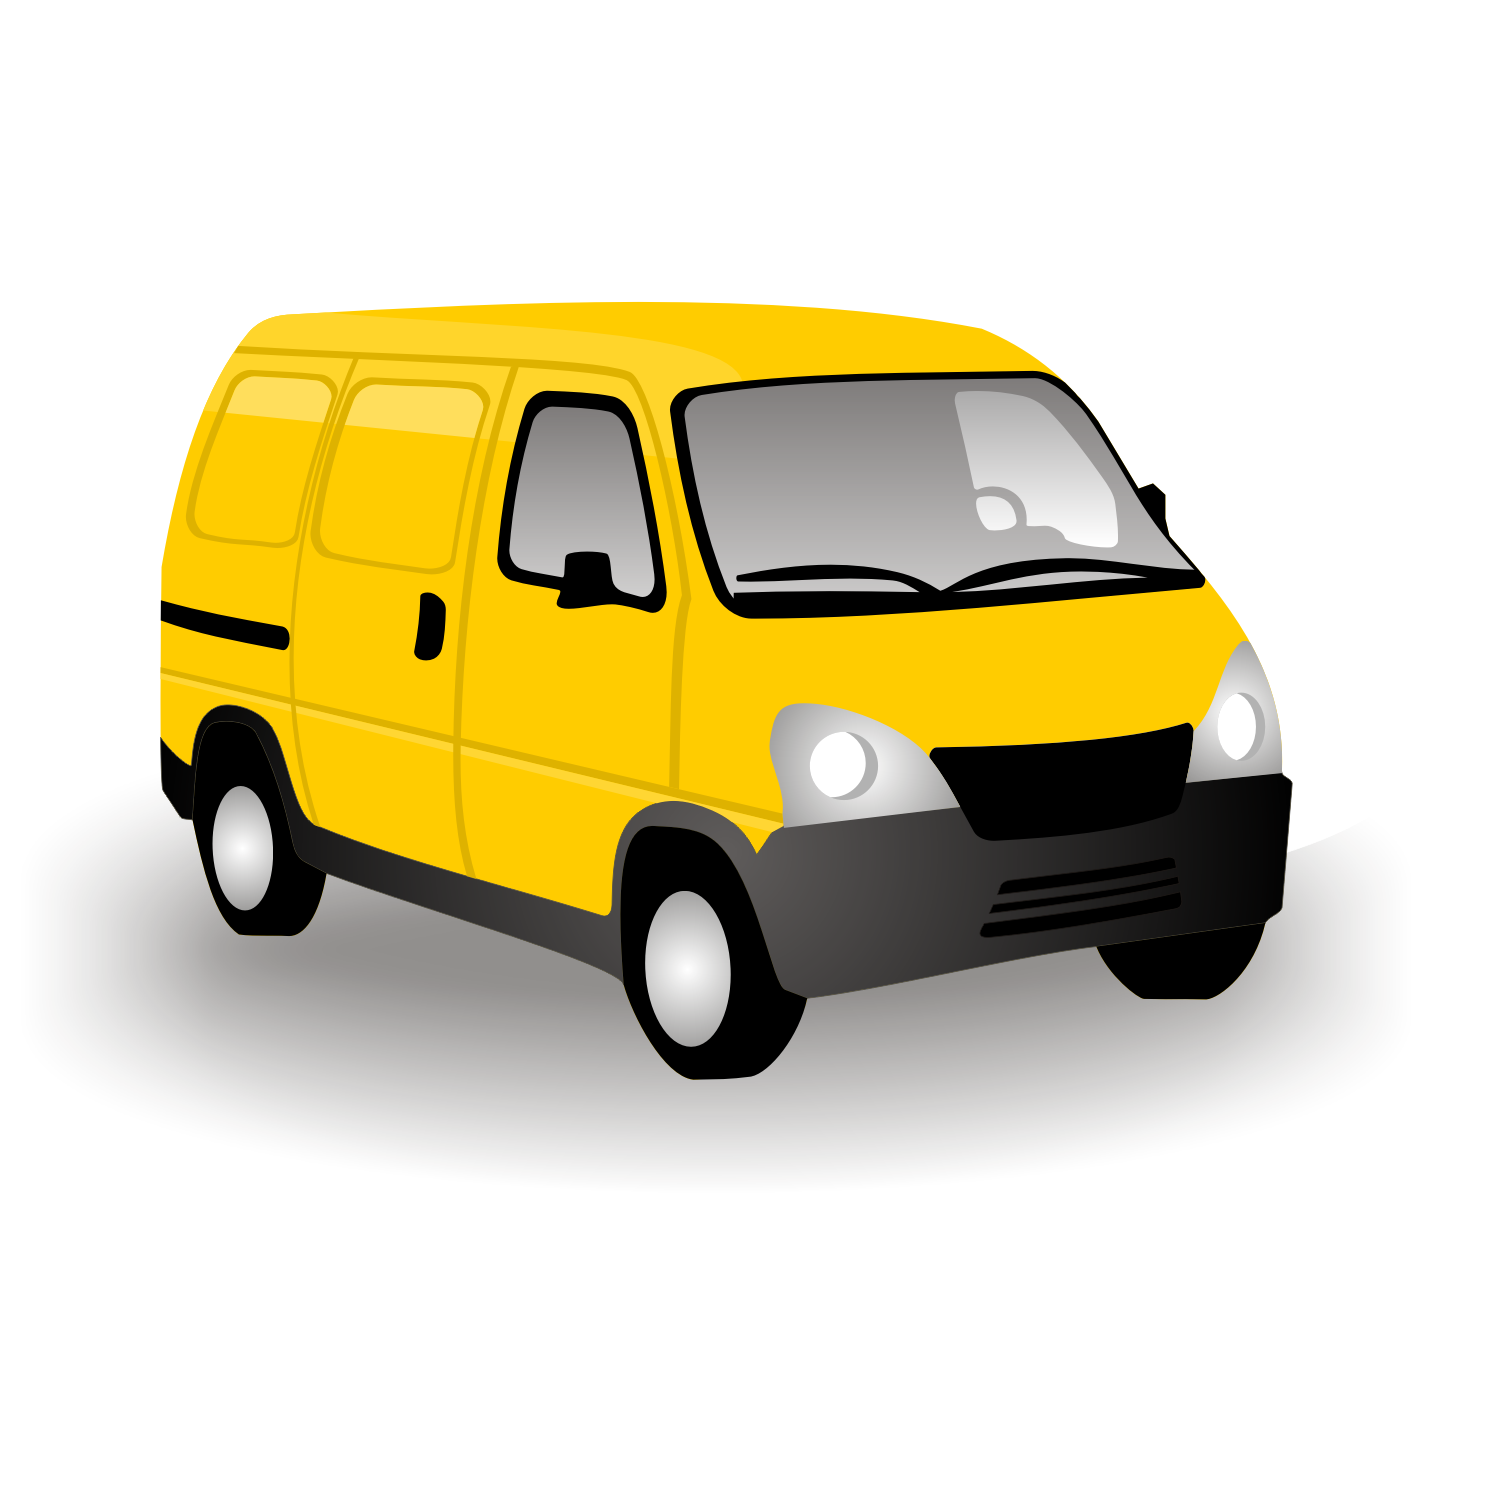 Automobile, cargo van, delivery van, side view, sprinter van, van 